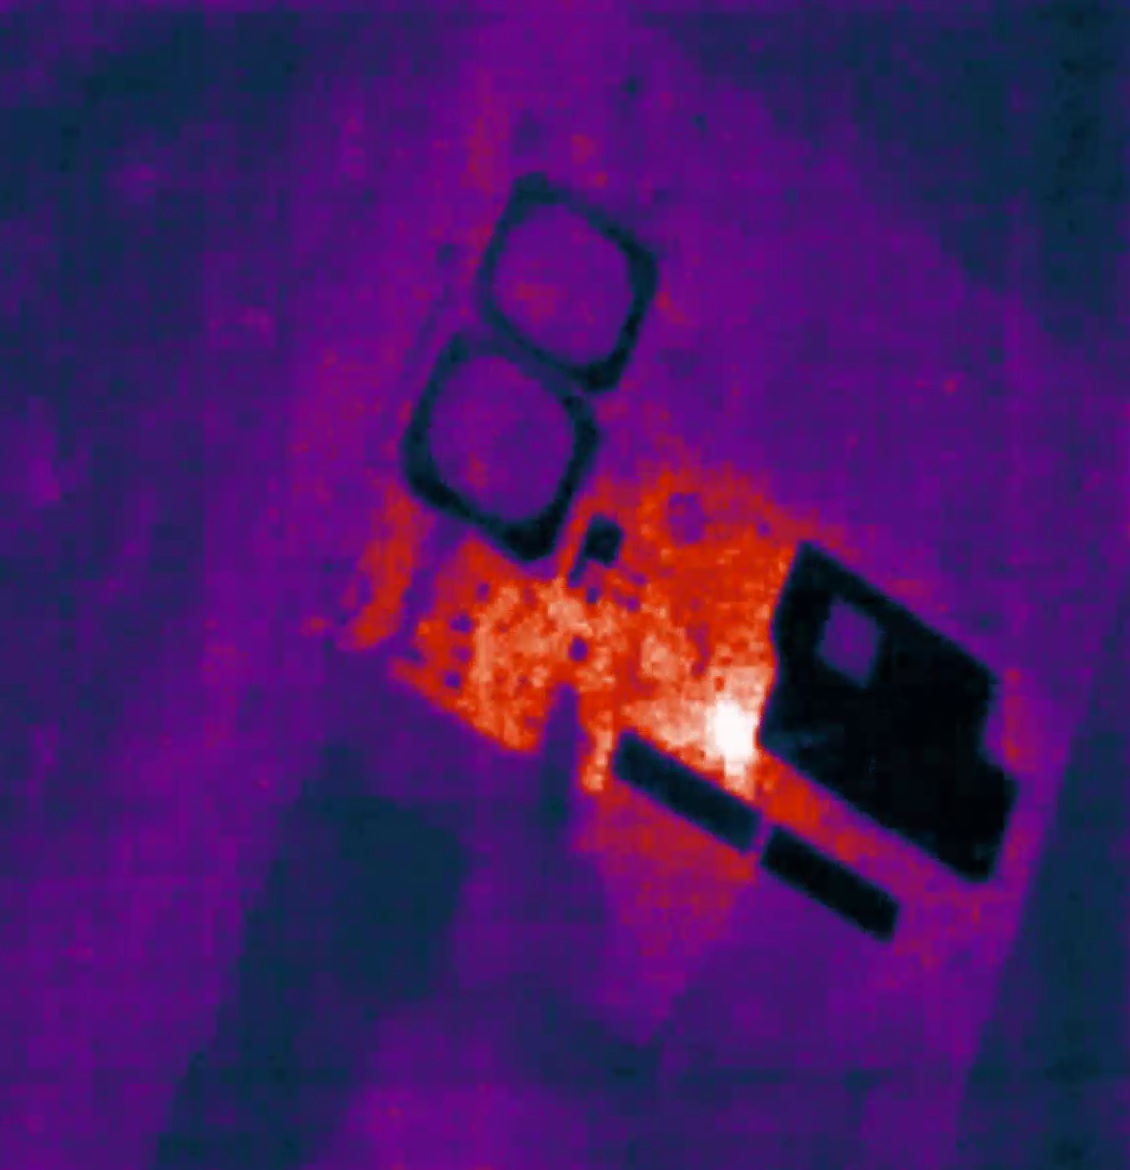 Снимок платы через тепловизор, яркая точка это место повышенного нагрева